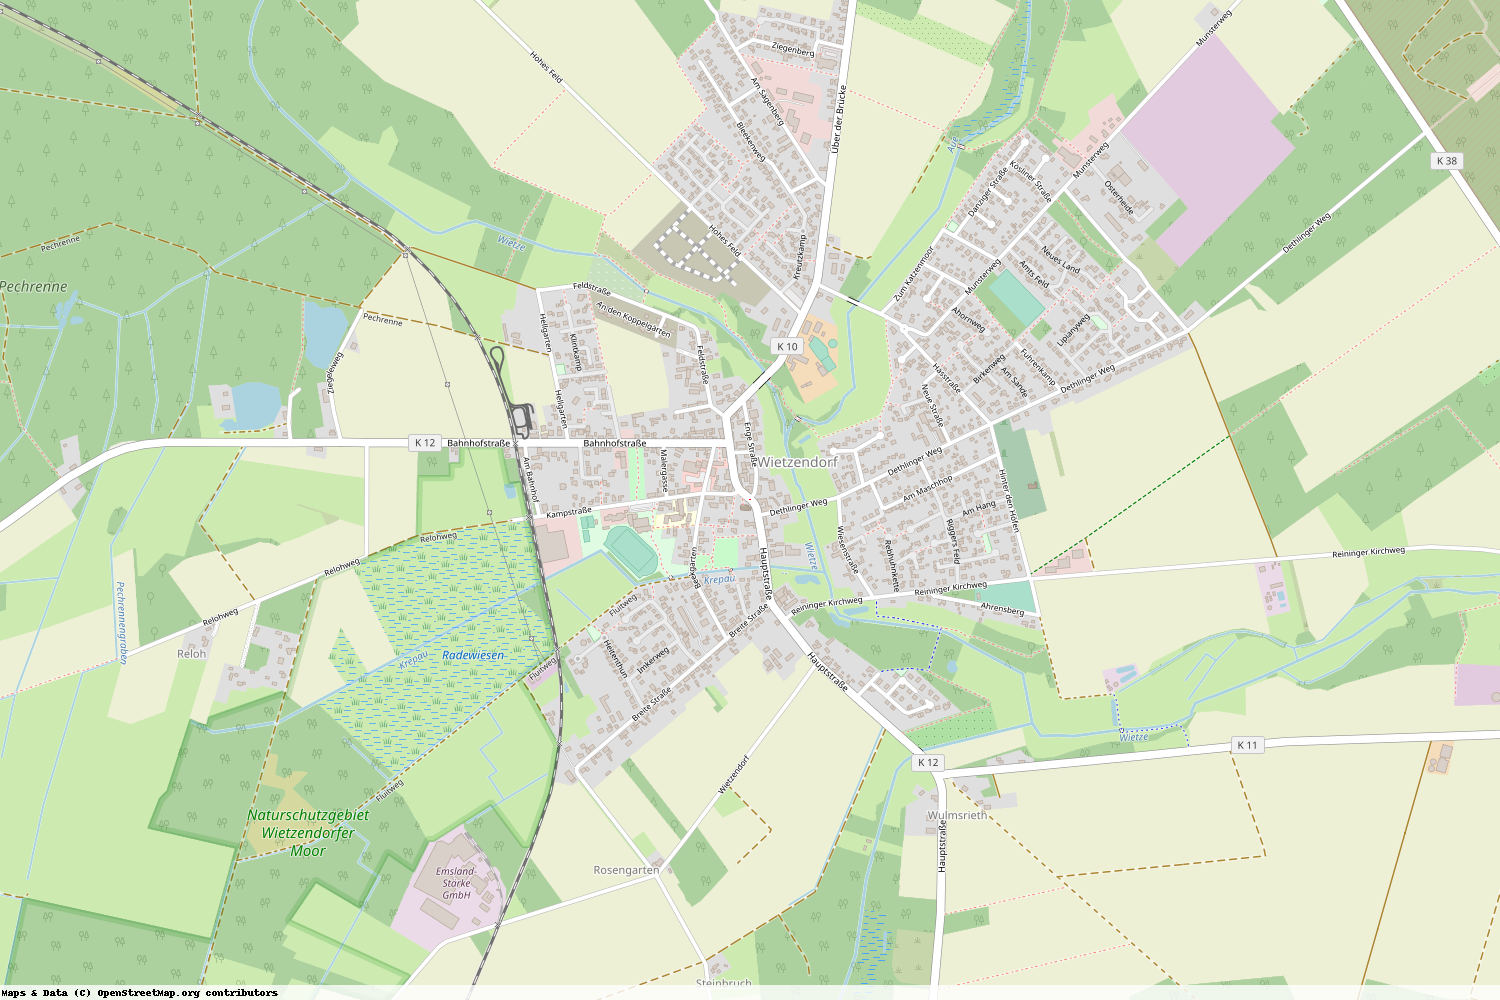 Ist gerade Stromausfall in Niedersachsen - Heidekreis - Wietzendorf?